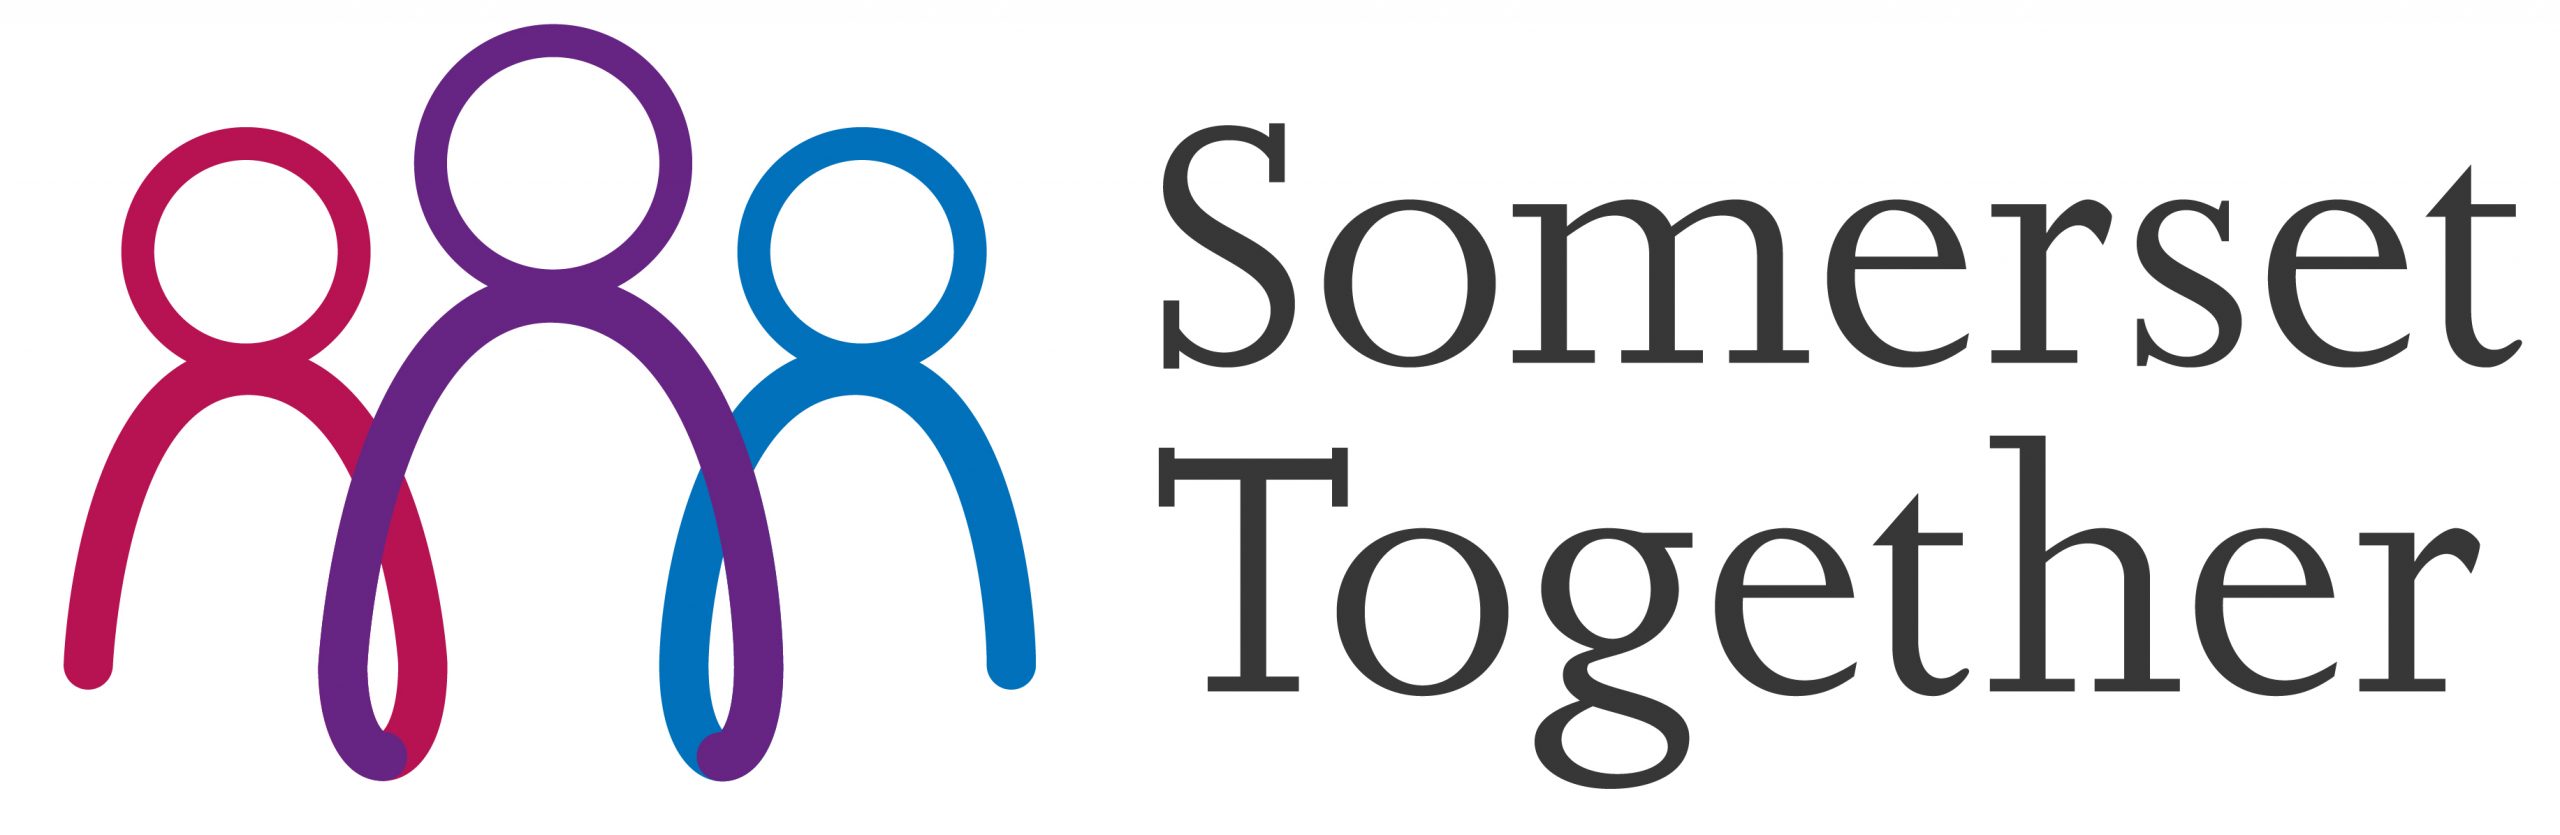 NHS Somerset Together logo